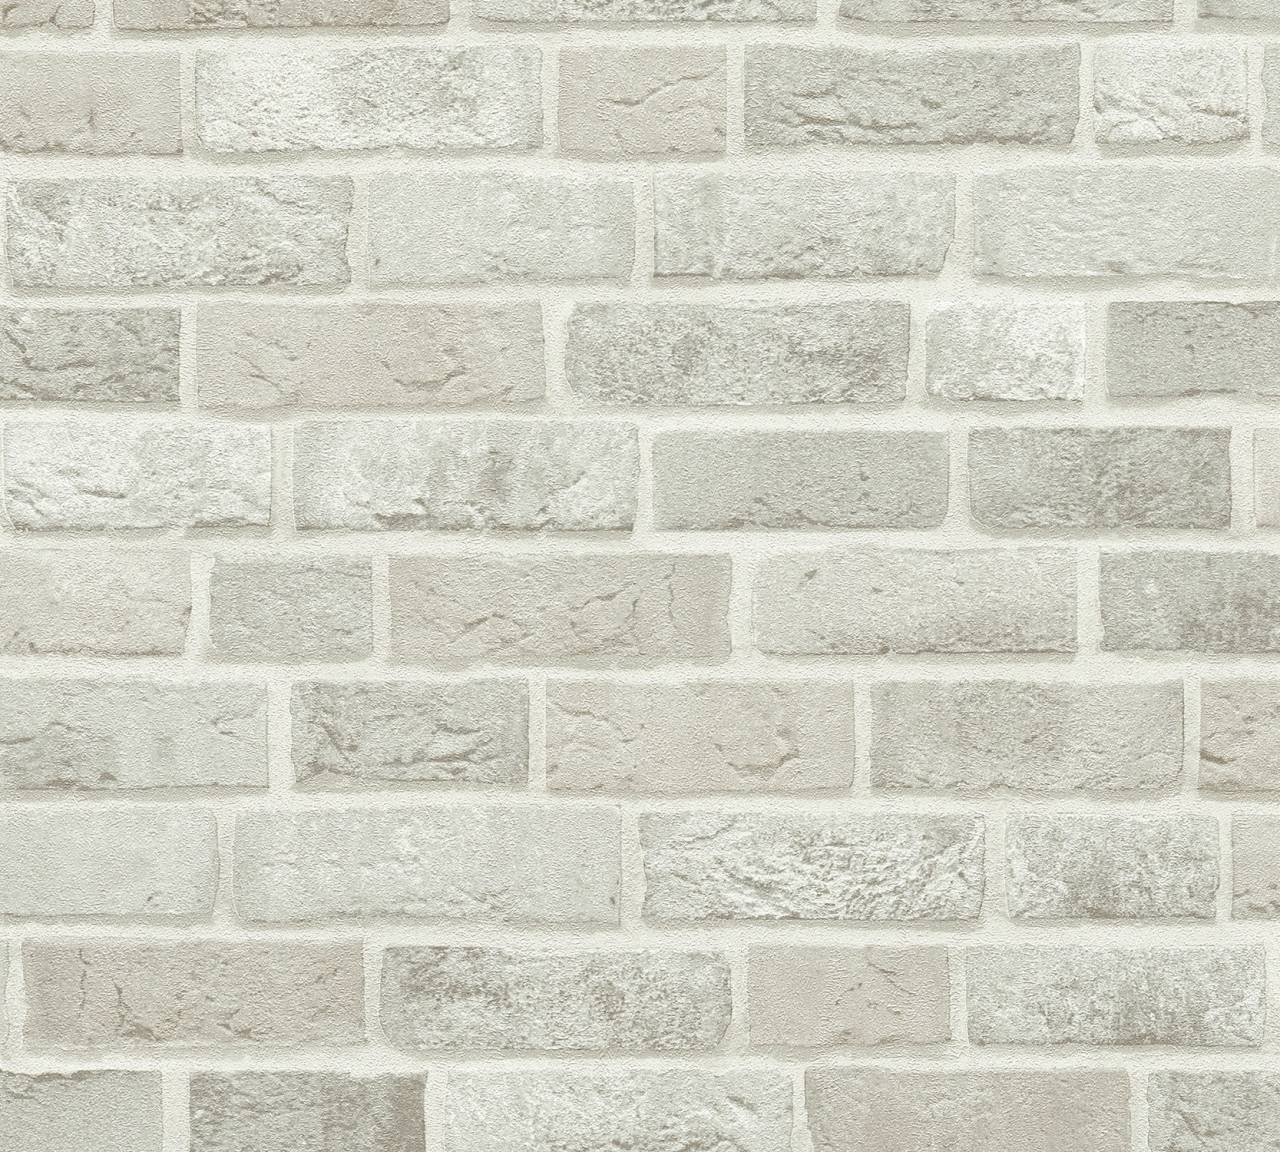 Thomas Non-Woven Wallpaper Brick Grey Tlt023 - 369812